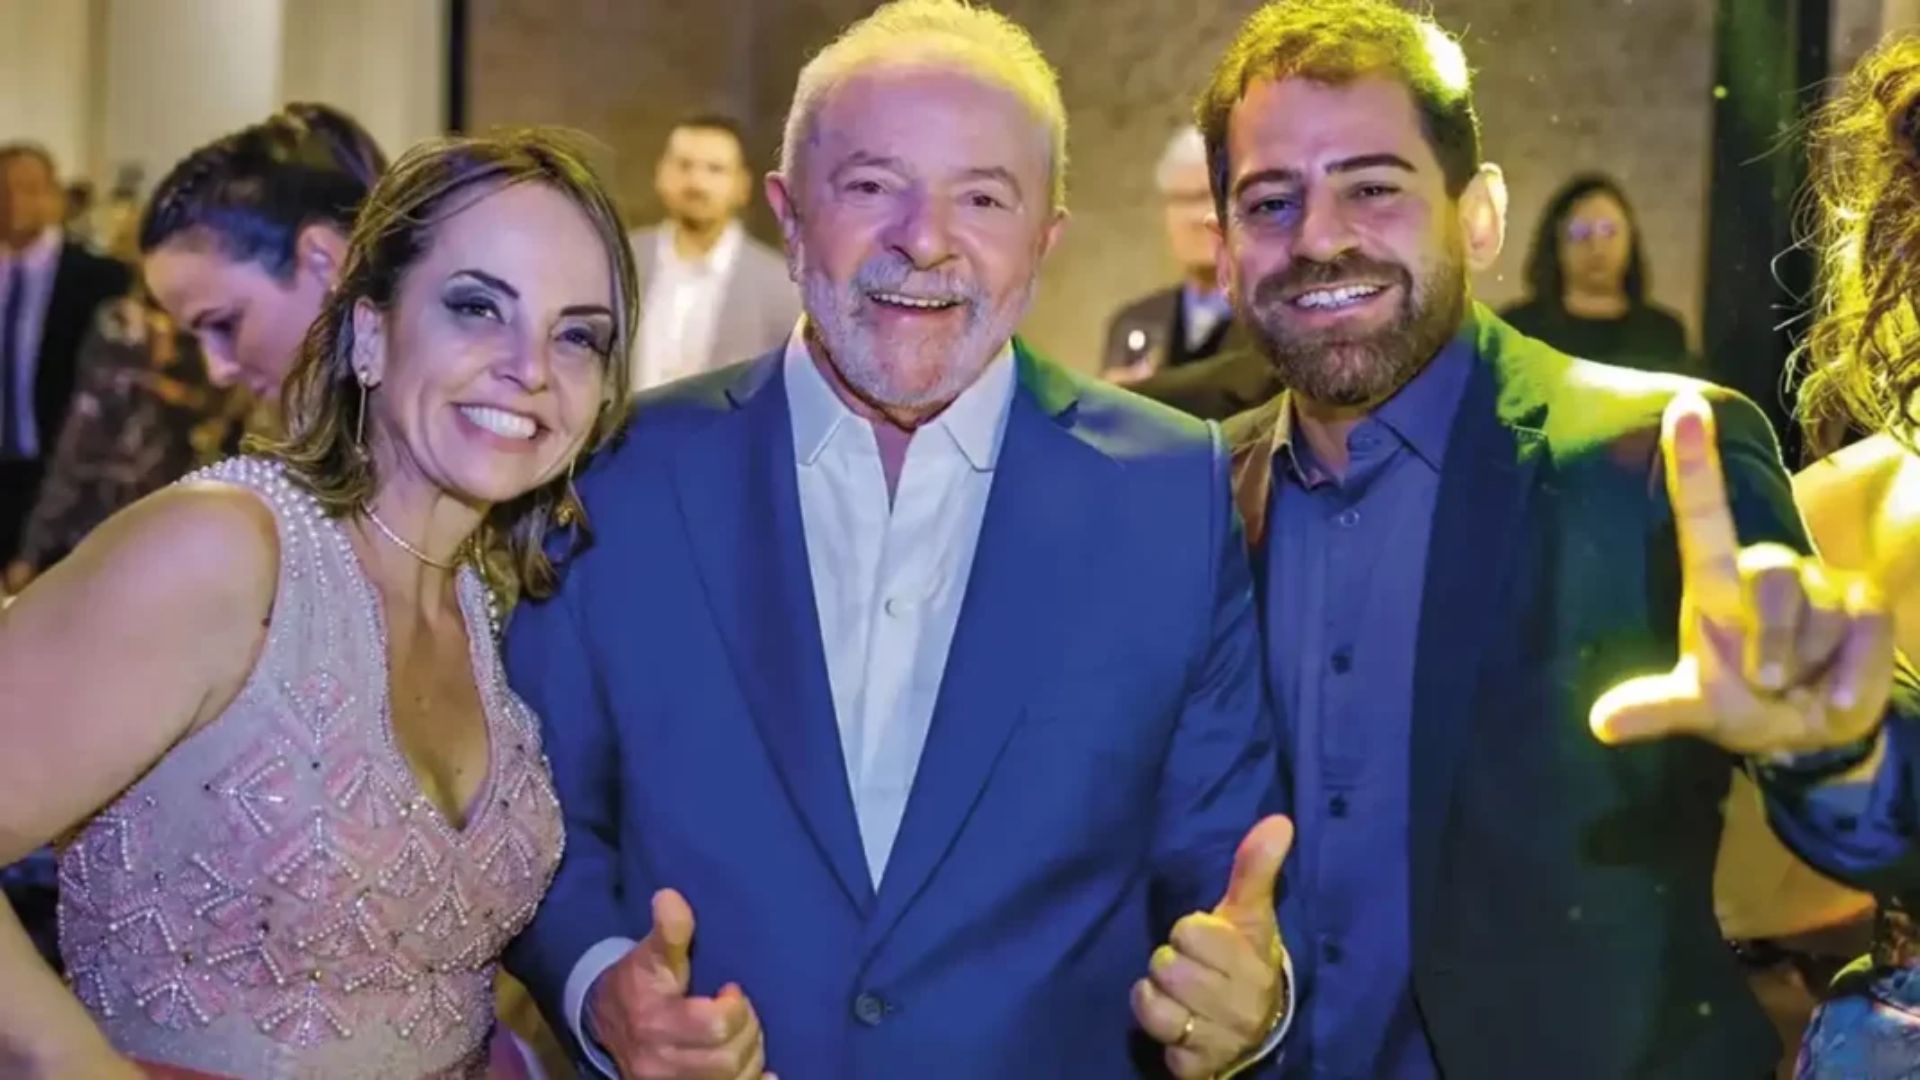 Presidente Lula ao lado de sua filha Luriam e seu genro Danilo Sampaio. Foto: Reprodução/ Redes Sociais